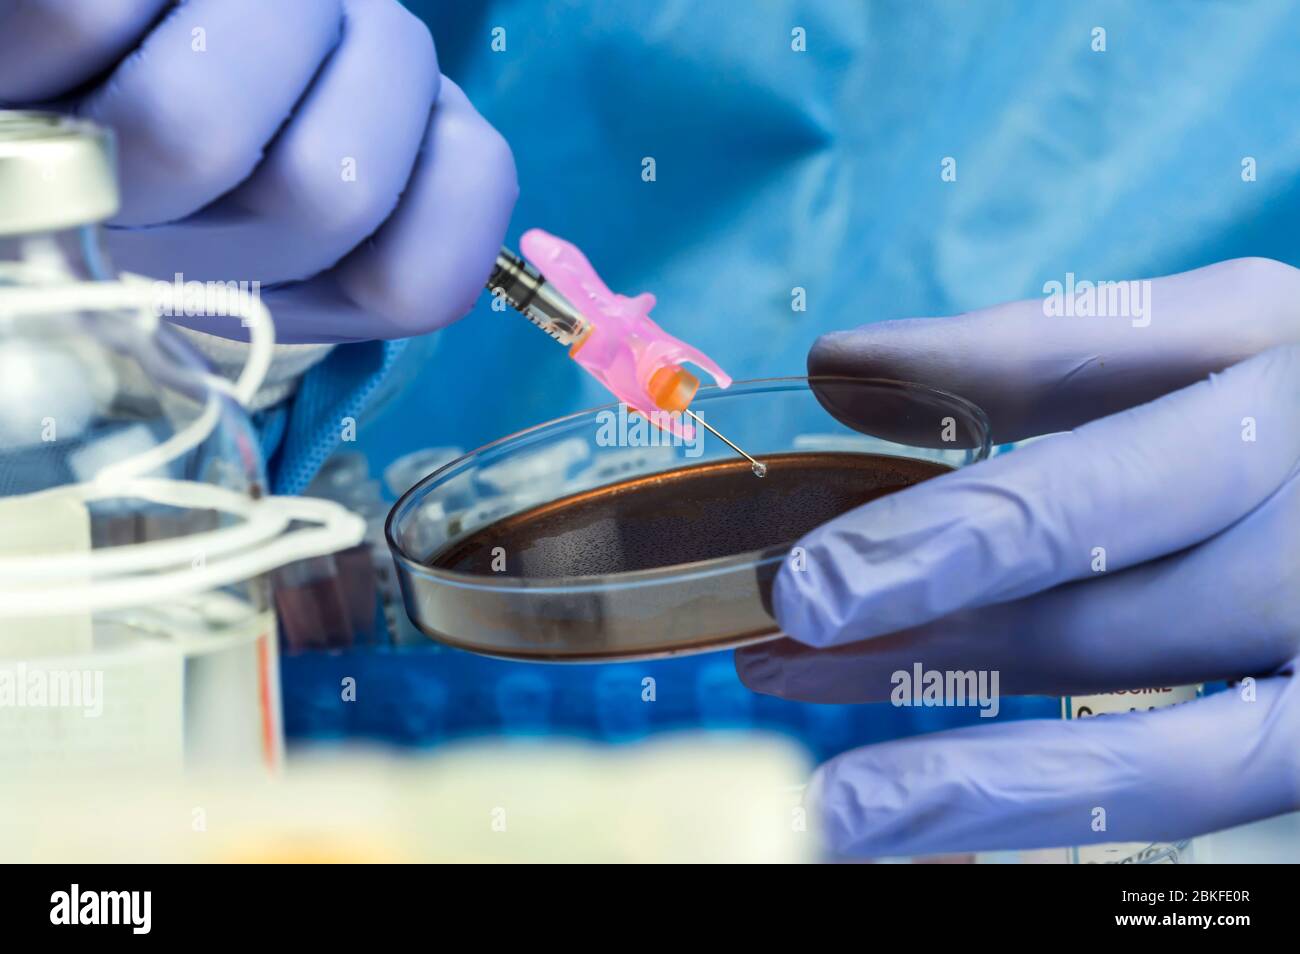 La enfermera prepara el cultivo de sangre en un plato de Petri preparado para experimentar, imagen conceptual Foto de stock